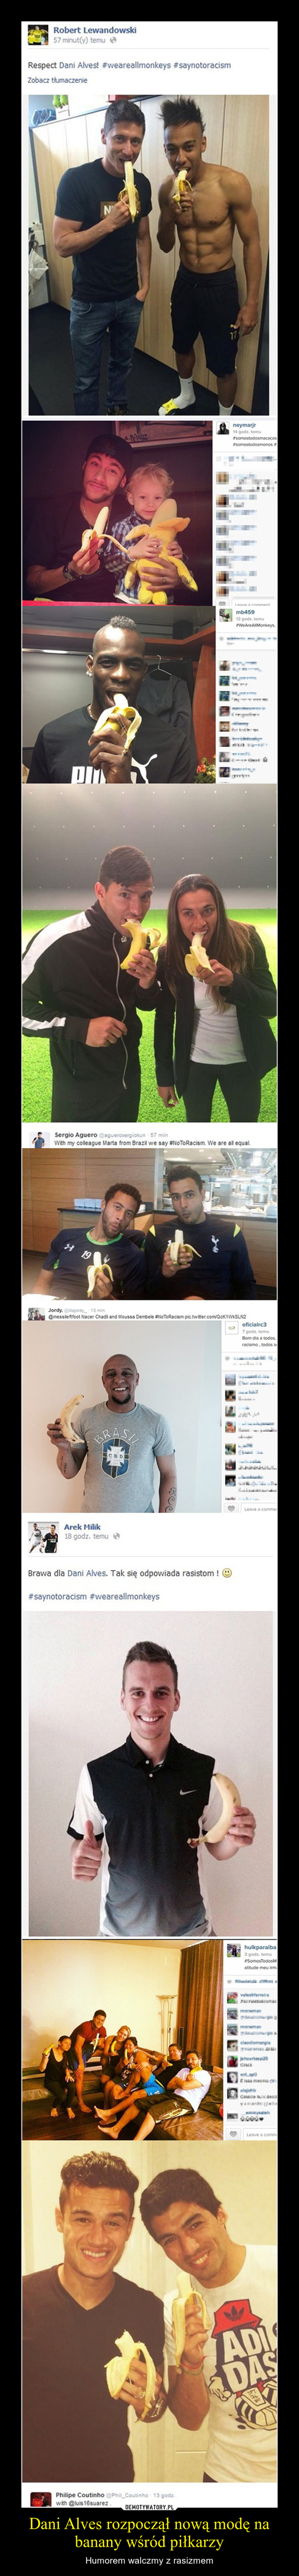 Dani Alves rozpoczął nową modę na banany wśród piłkarzy – Humorem walczmy z rasizmem 